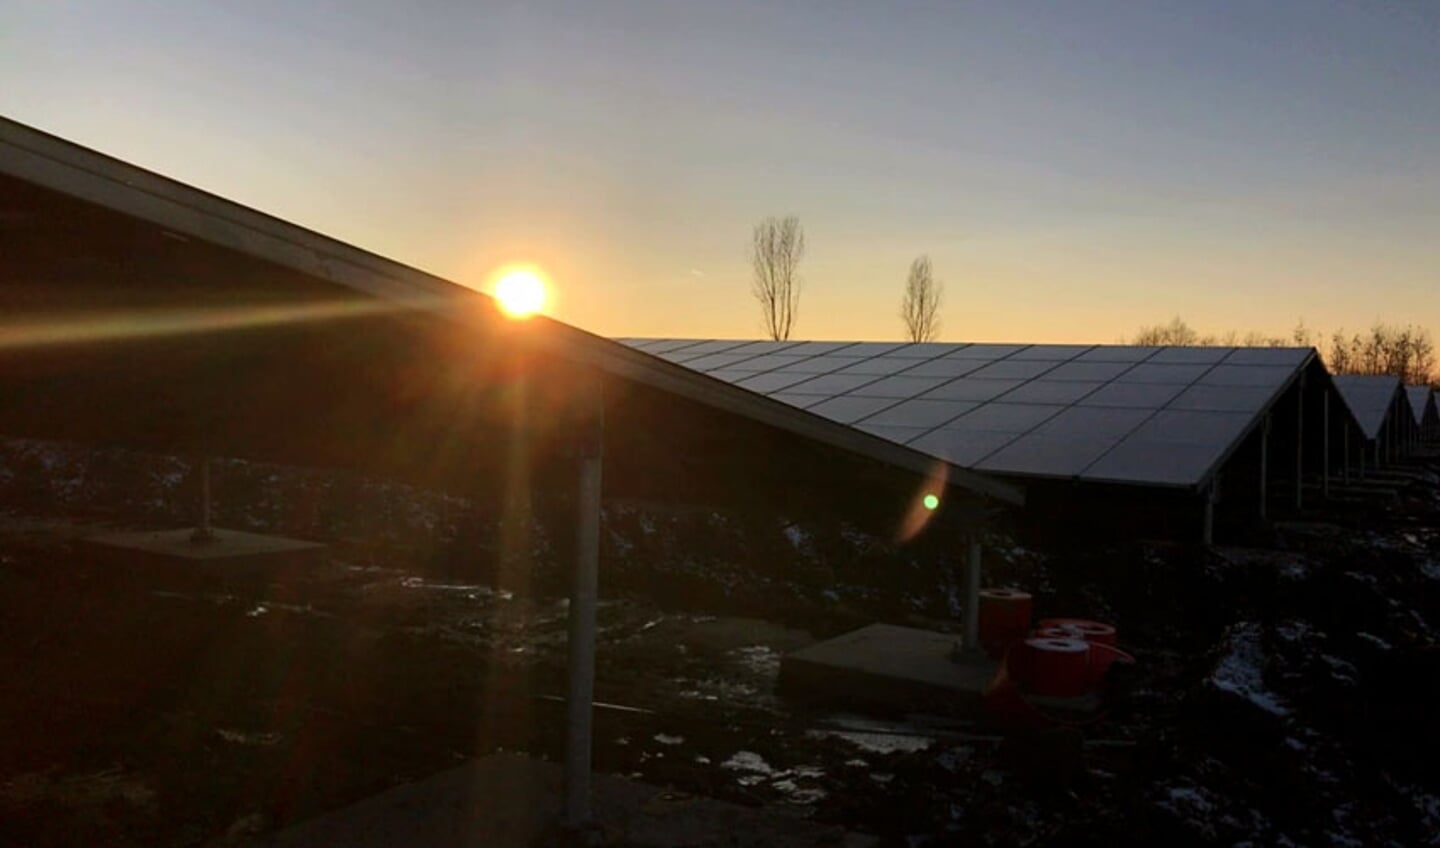 Het zonnepark in Garyp dat ontstond uit een burgerinitiatief